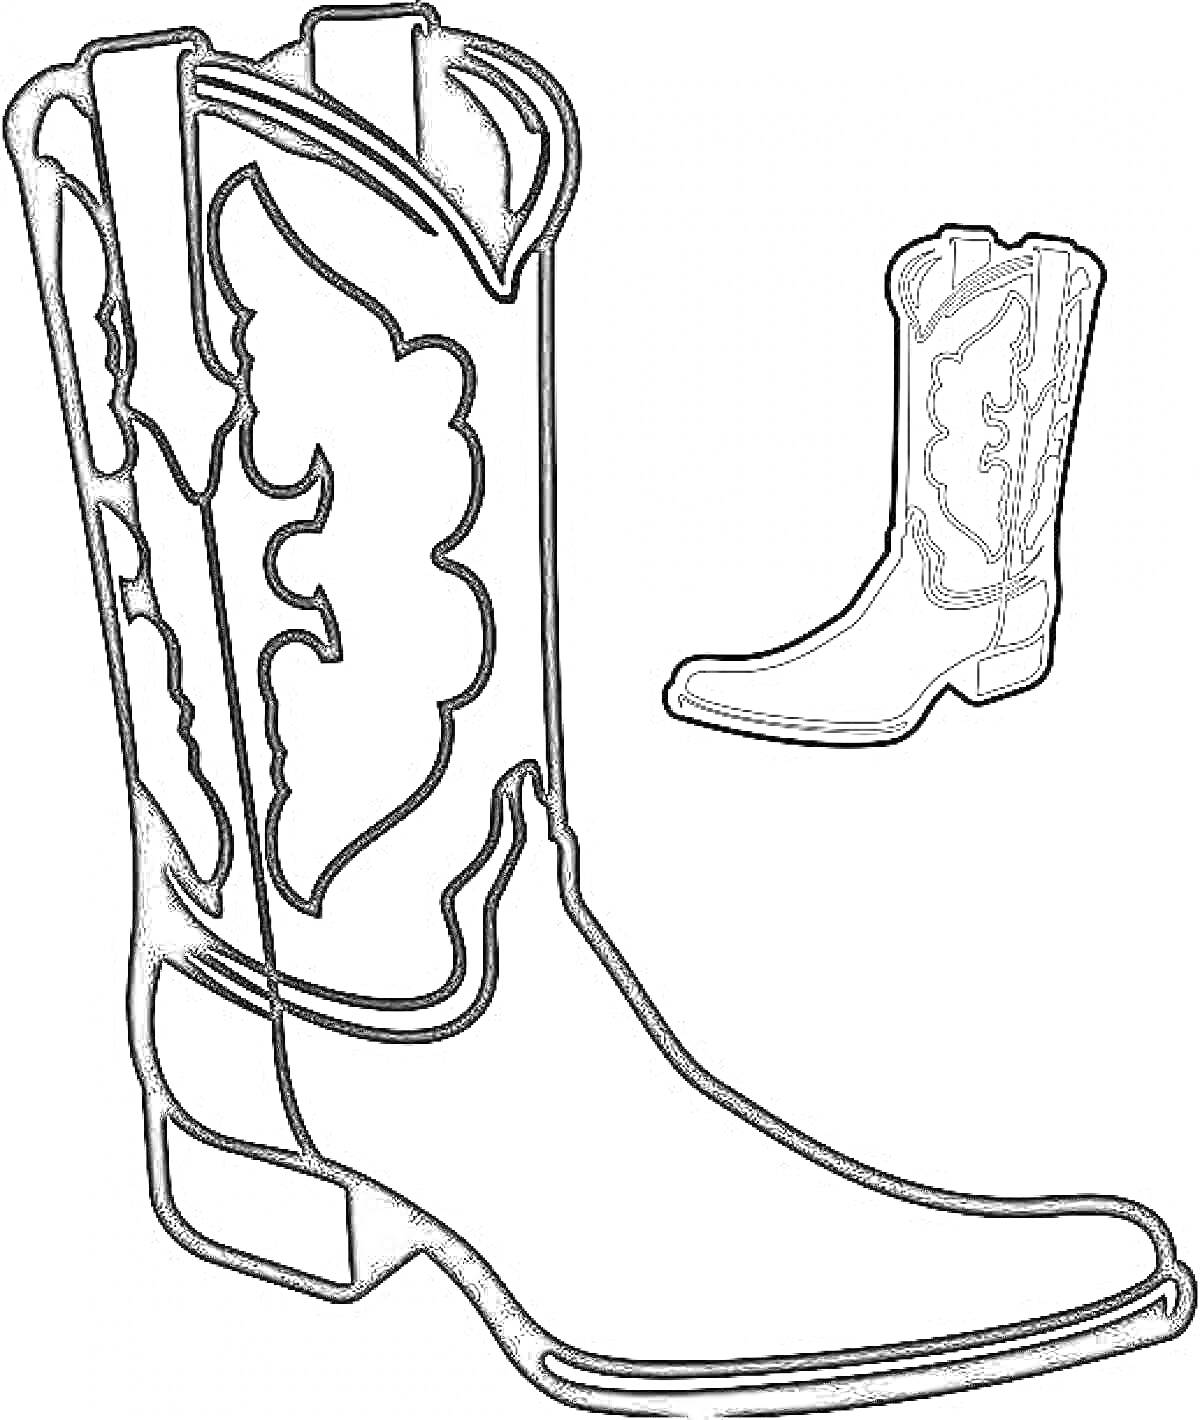 Раскраска Ковбойский сапог с декоративным узором на длинном ботинке и маленьким изображением того же сапога